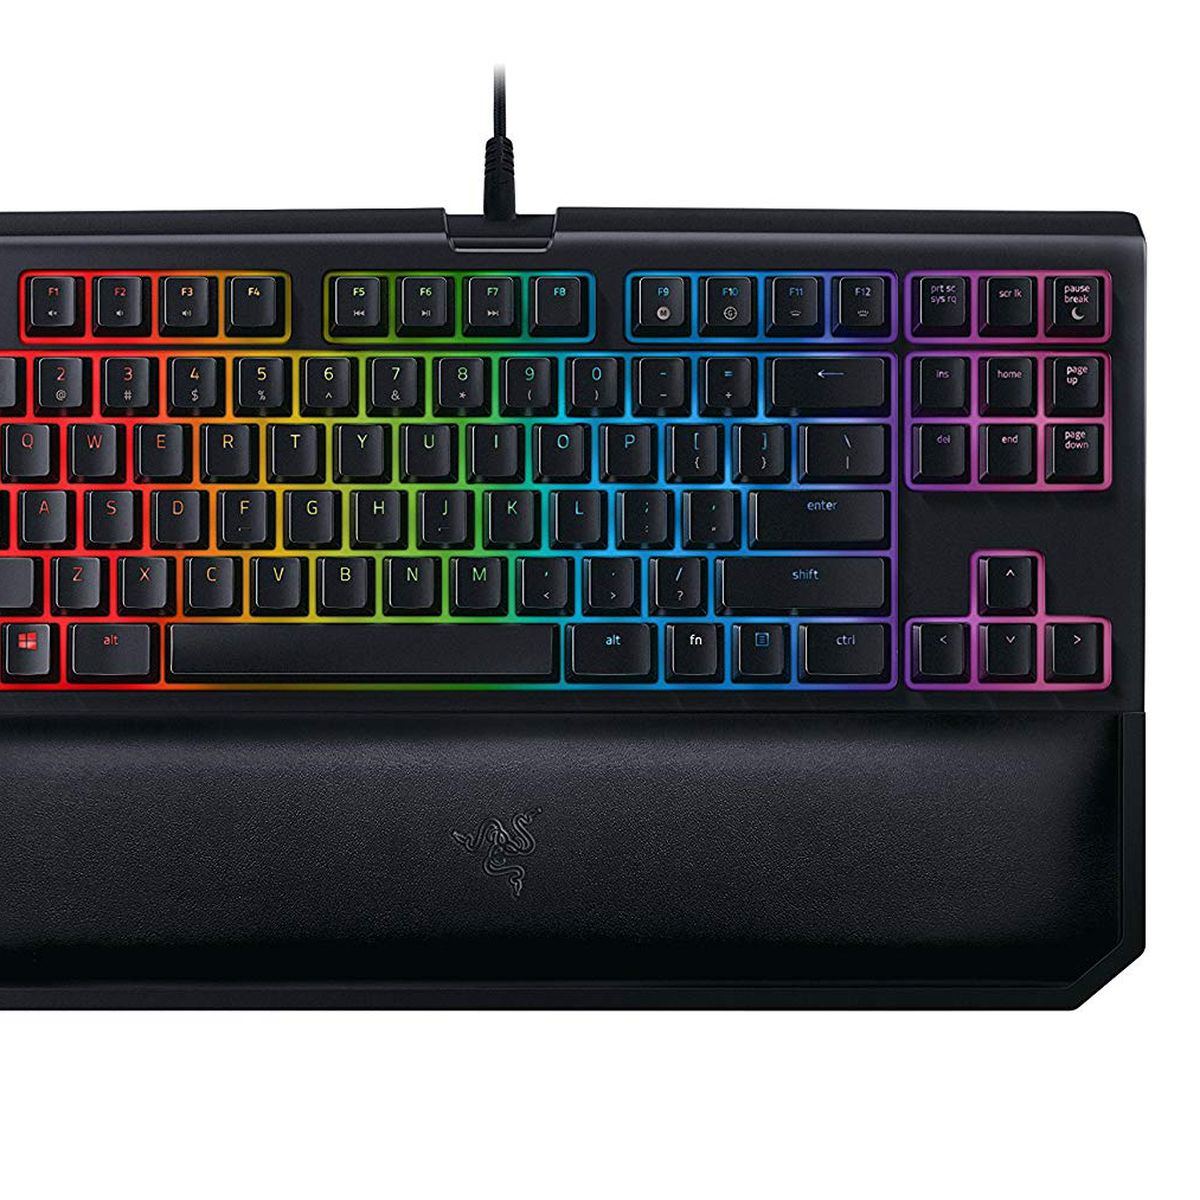 A product shot of Razer’s BlackWidow TE Chroma v2 mechanical gaming keyboard